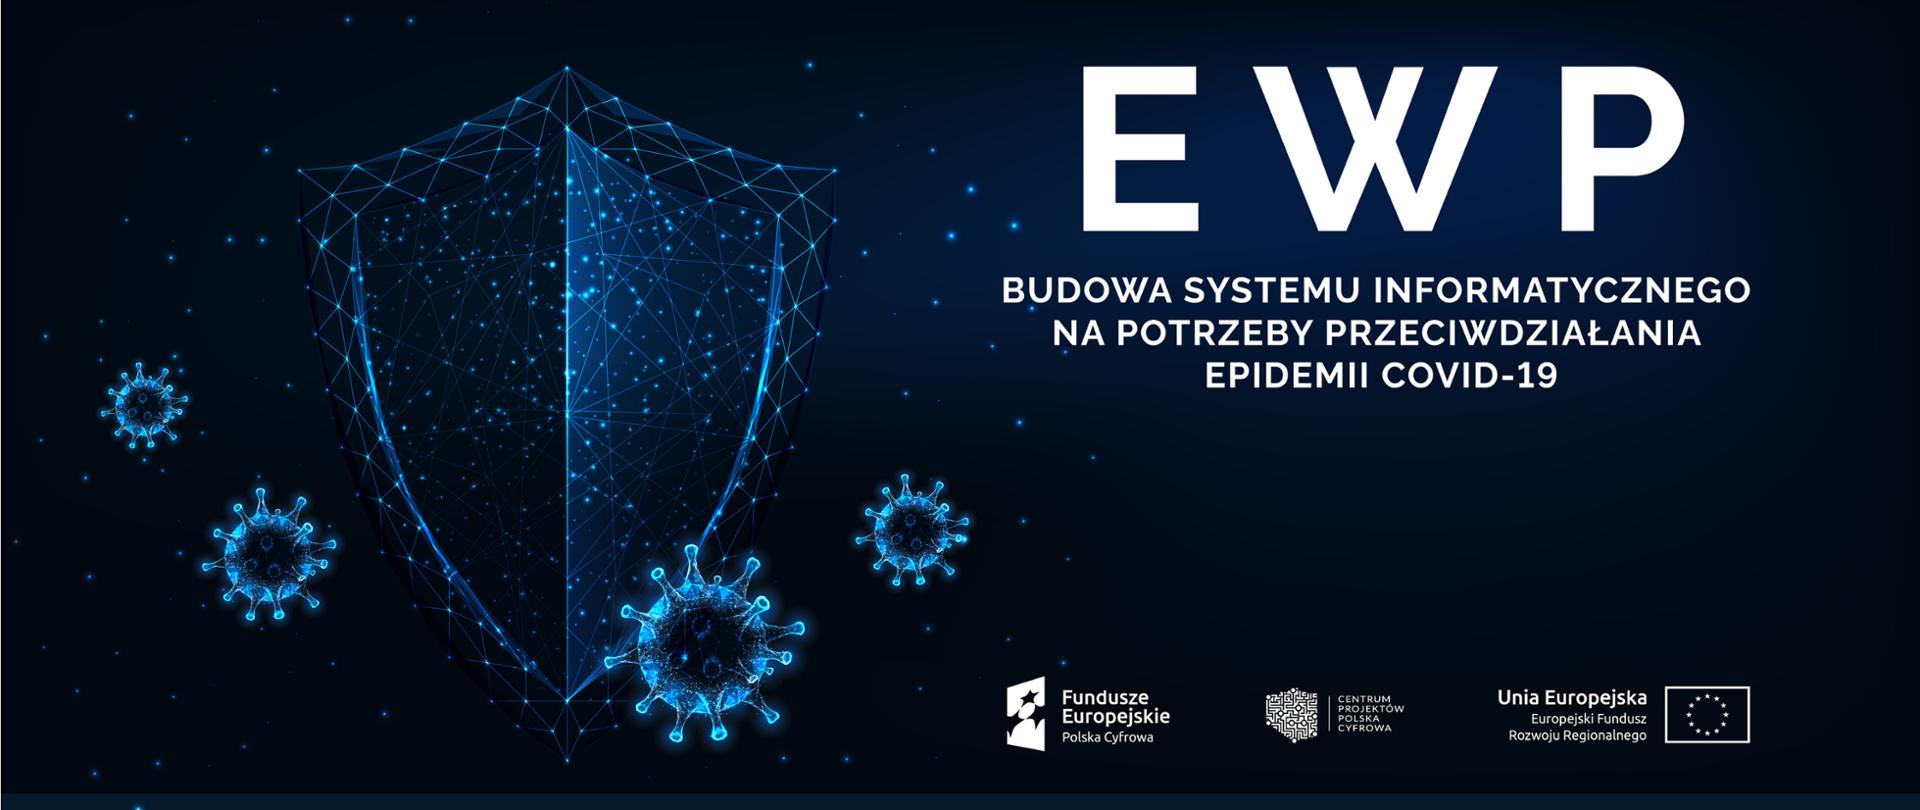 EWP – budowa systemu informatycznego na potrzeby przeciwdziałania epidemii COVID-19